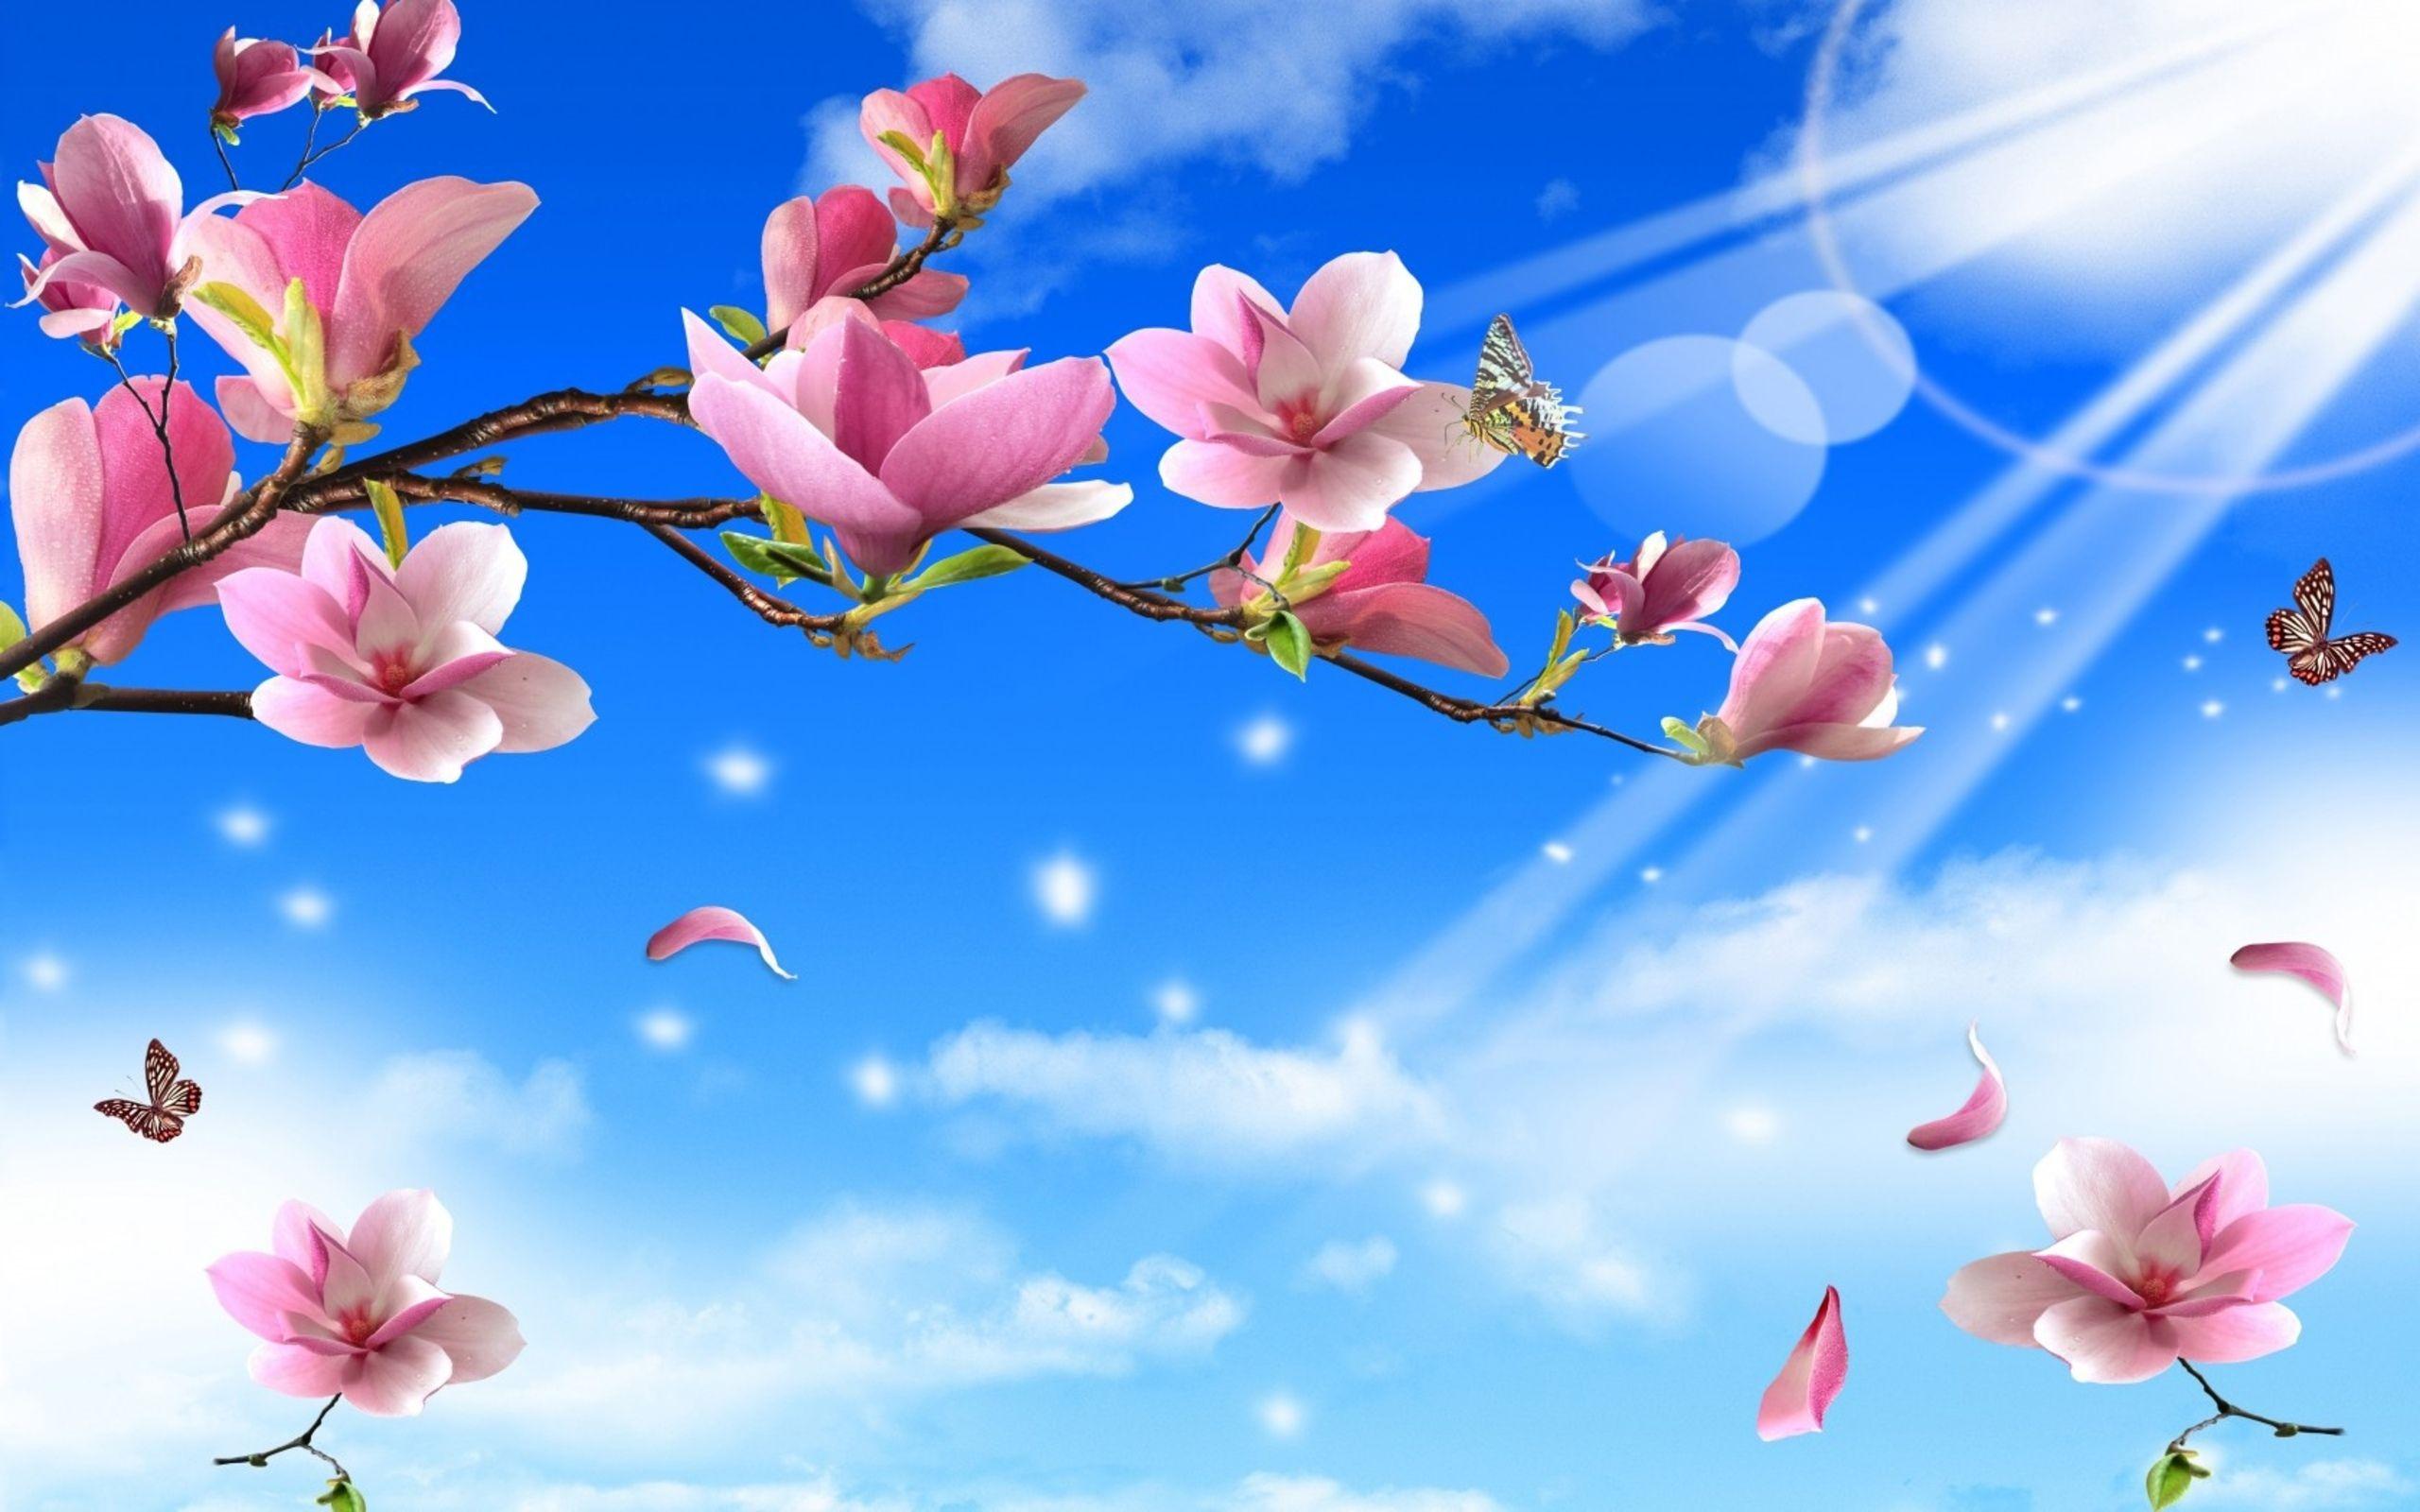 Spring Flowers And Butterflies Wallpaper (2560×1600). Blue Flower Wallpaper, Pink Flowers Wallpaper, Free Flower Wallpaper